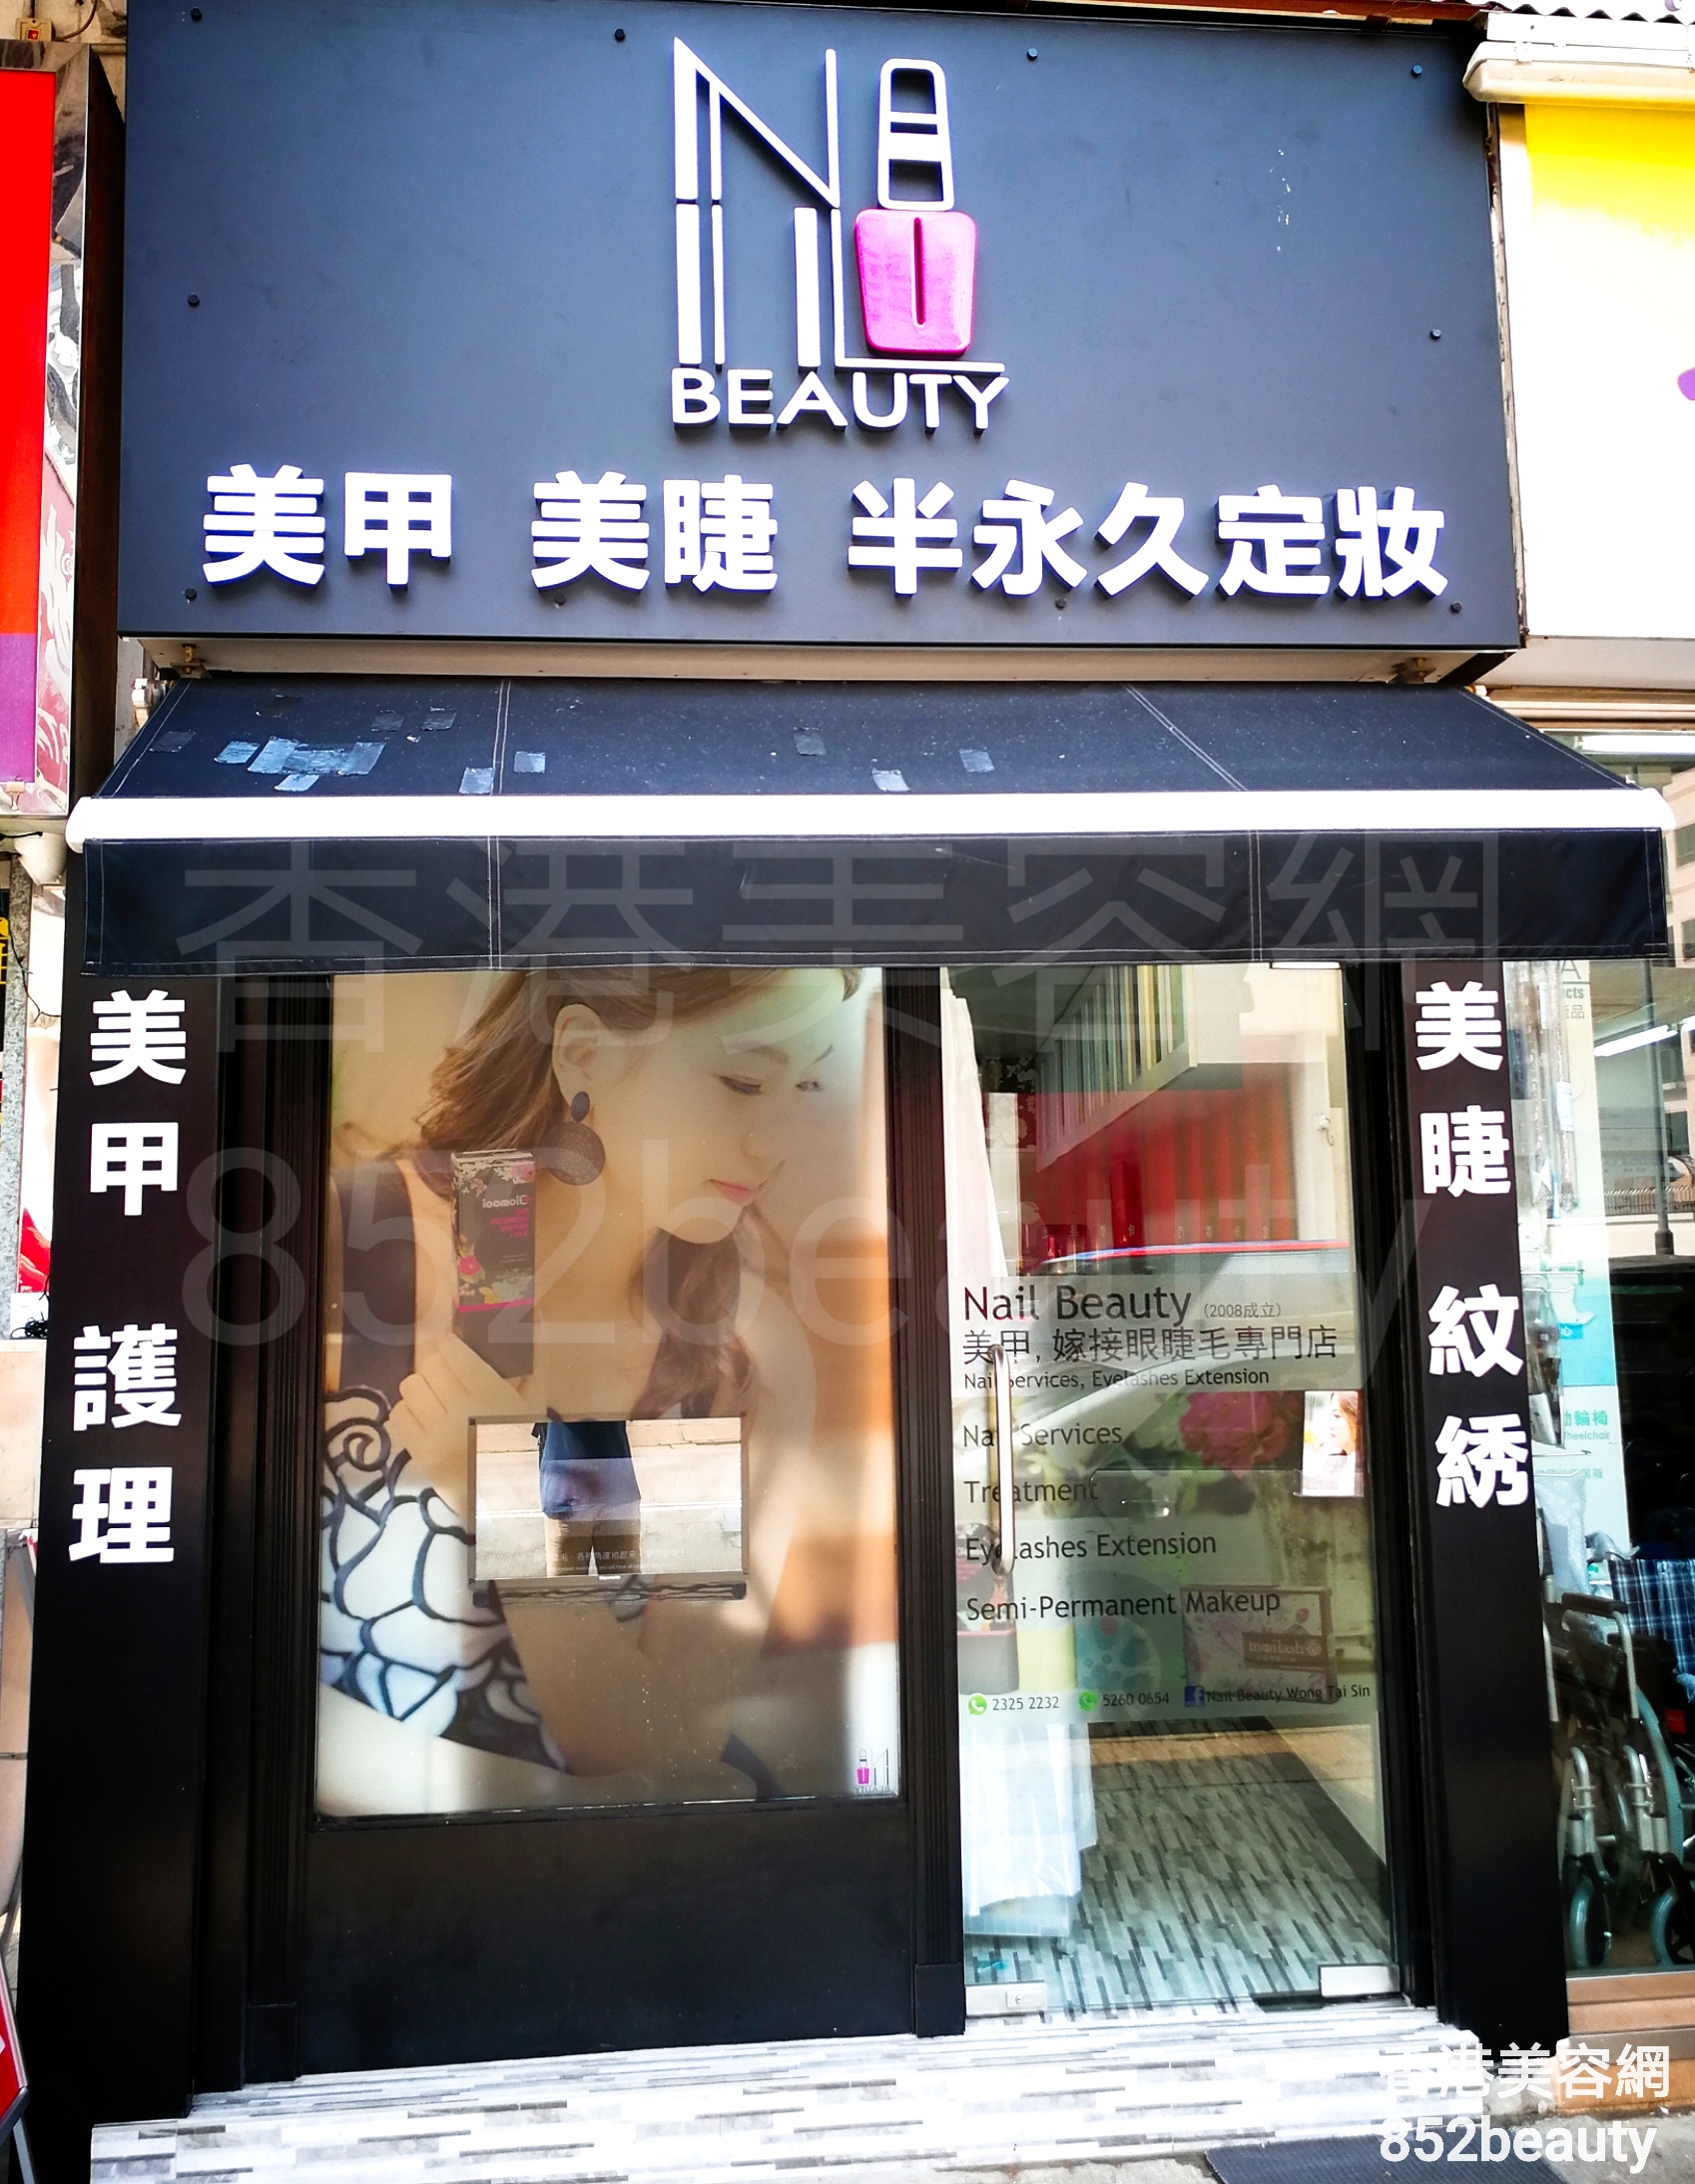 香港美容網 Hong Kong Beauty Salon 美容院 / 美容師: Nail Beauty (黃大仙店)